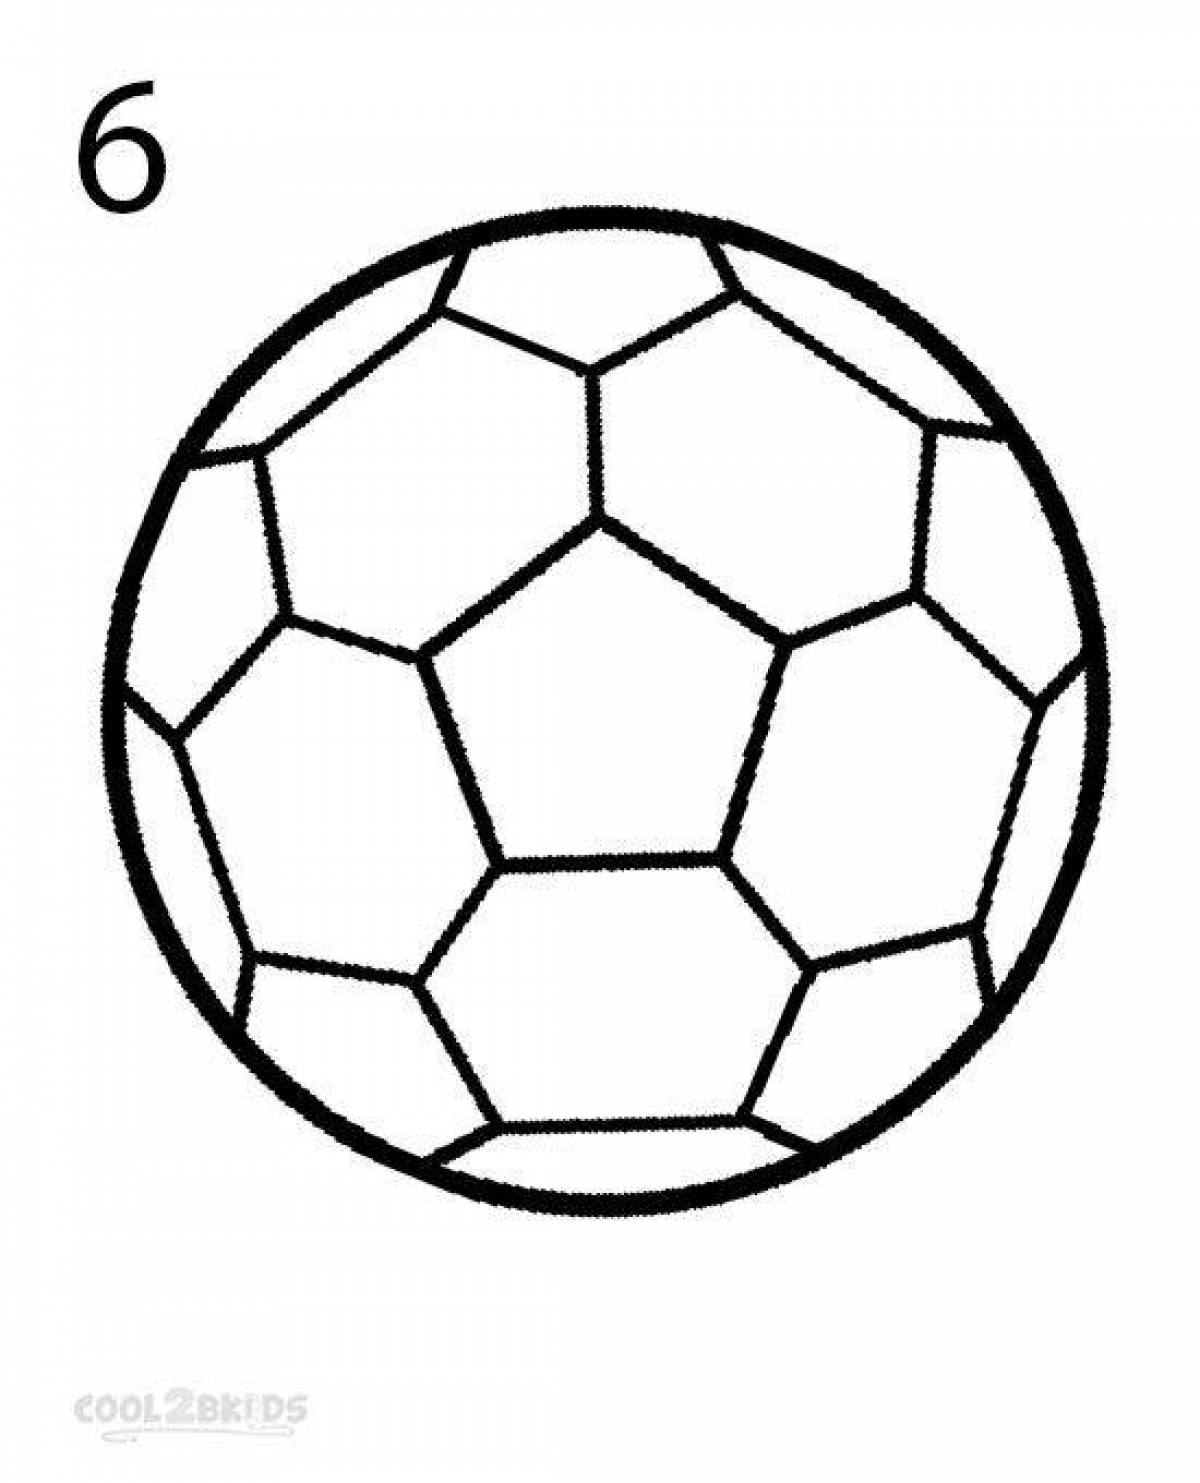 Раскраска удивительный футбольный мяч